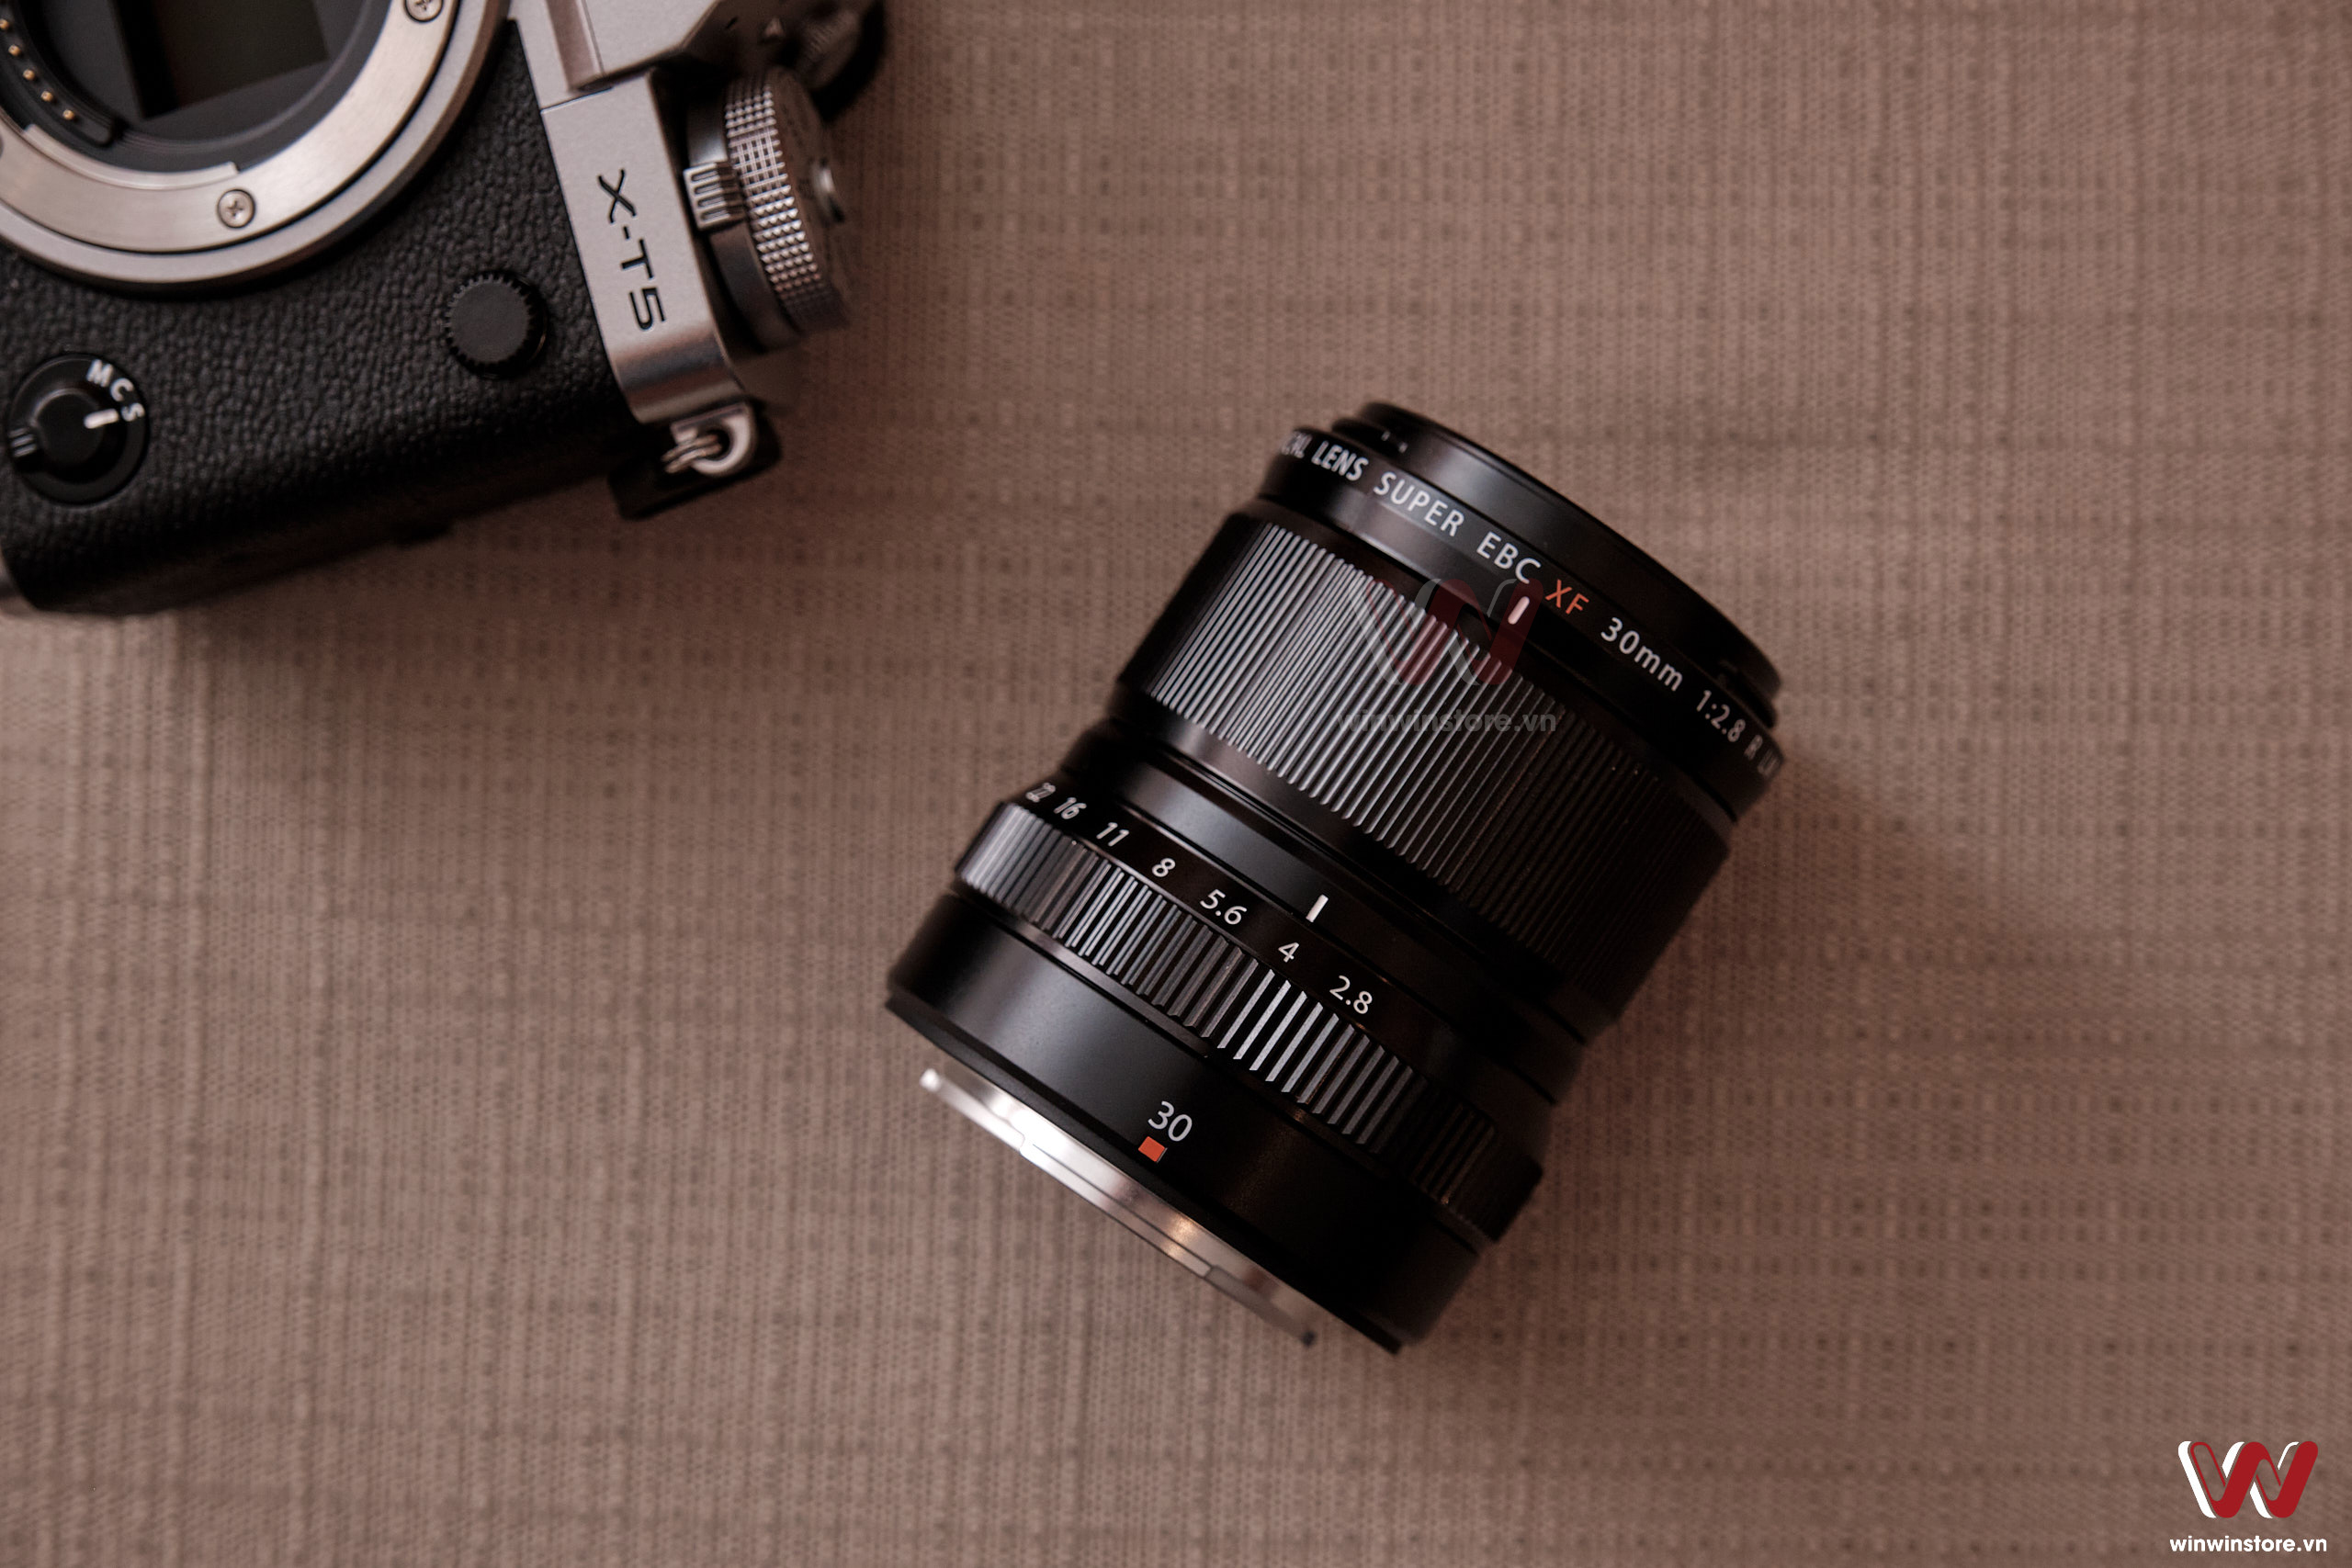 Trên tay ống kính Fujifilm XF 30mm F2.8 Macro: Nhỏ gọn nhưng rất chất lượng, khoảng lấy nét cực ngắn